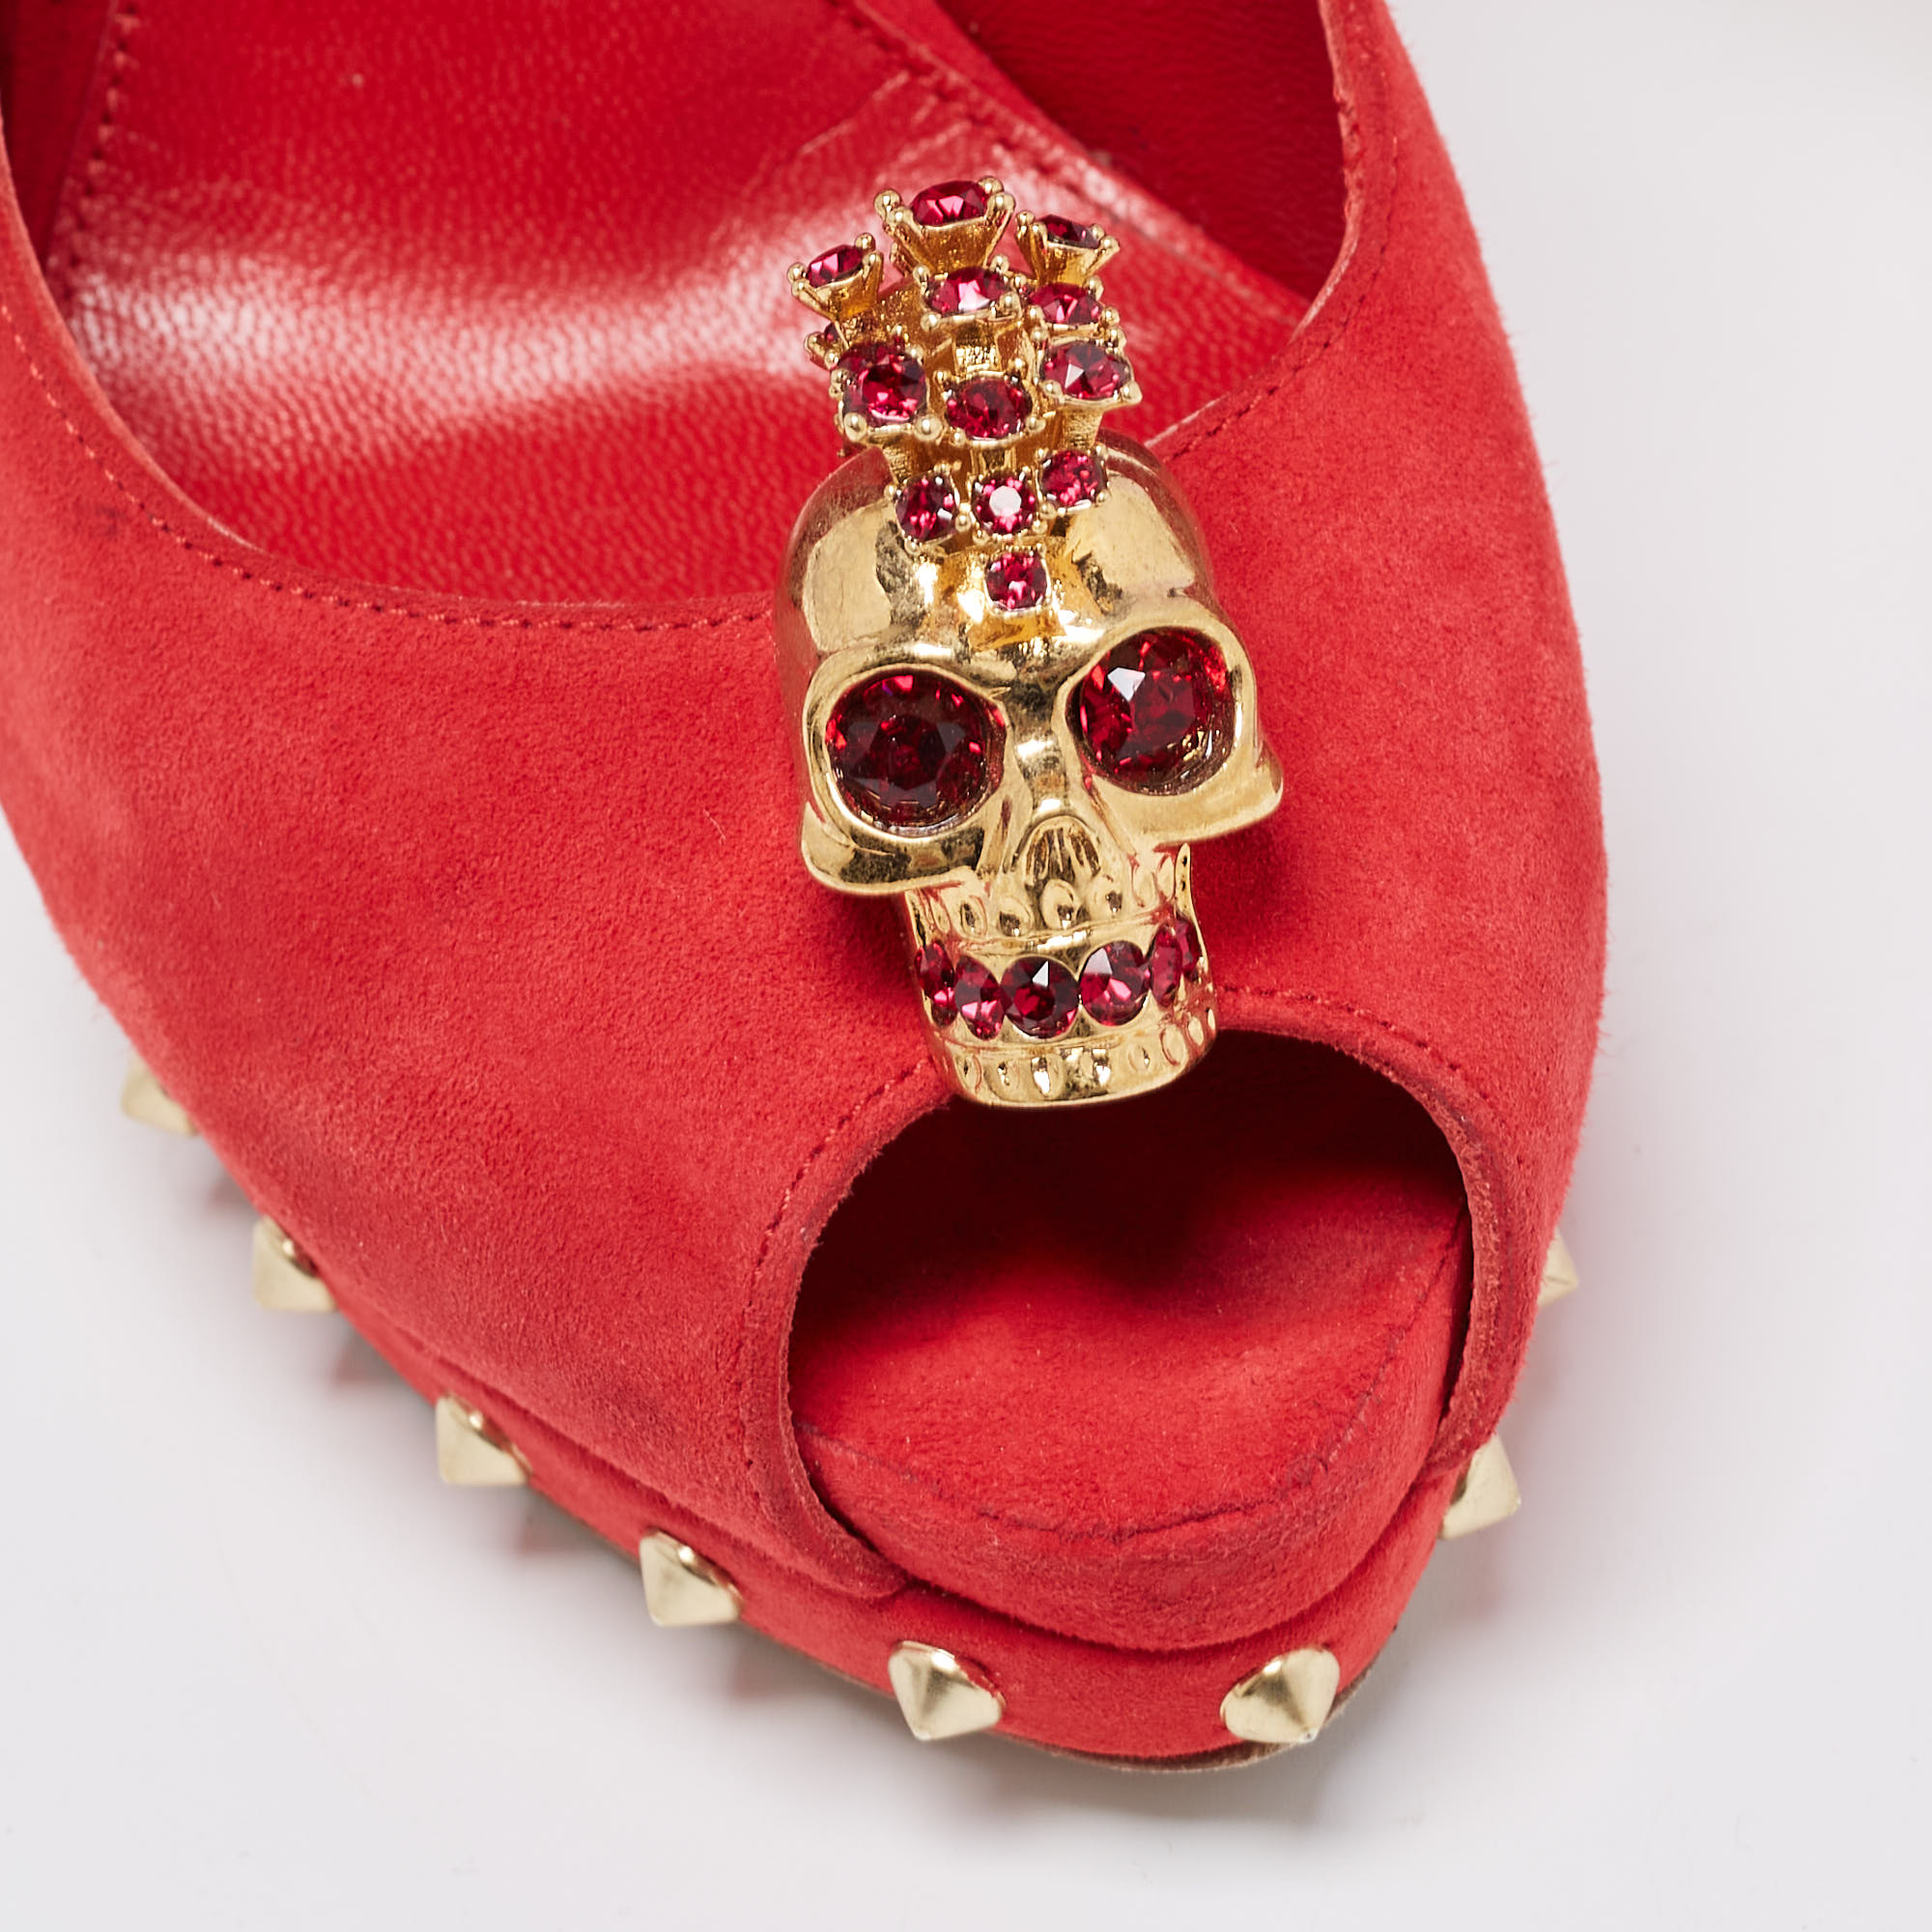 Alexander McQueen Red Suede Embellished Skull Studded Platform Peep Toe Pumps Size 36.5